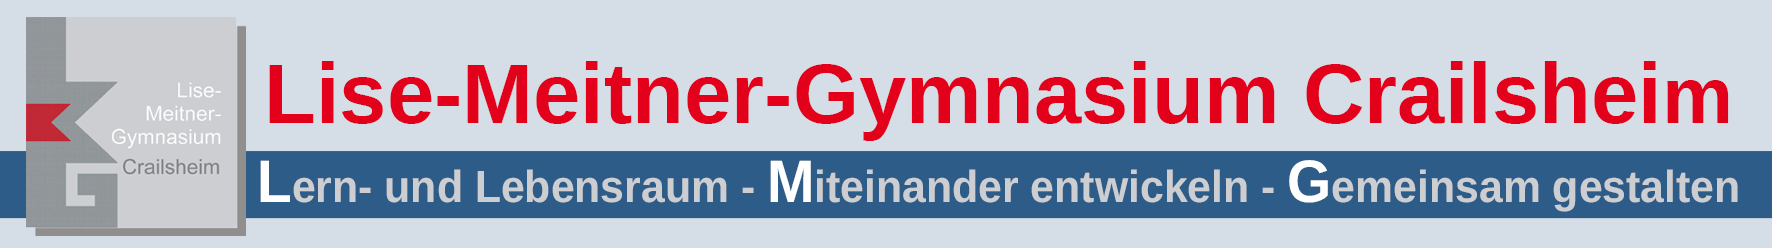 Homepage des Lise-Meitner Gymnasiums Crailsheim